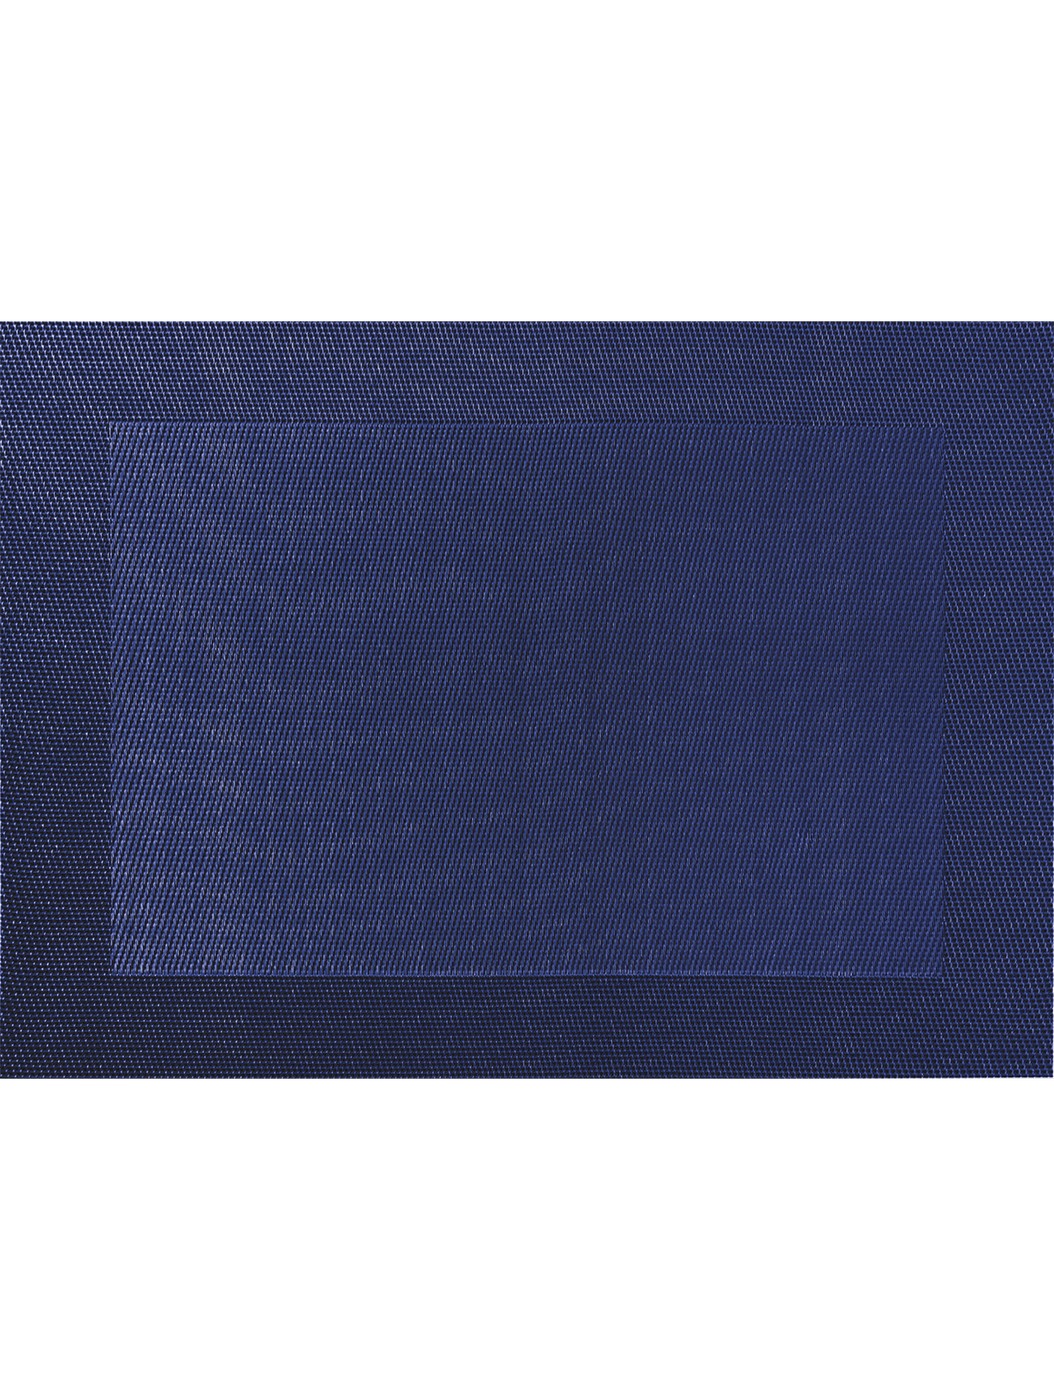 Prostírání 46x33 cm PVC COLOUR ASA Selection - tmavě modré